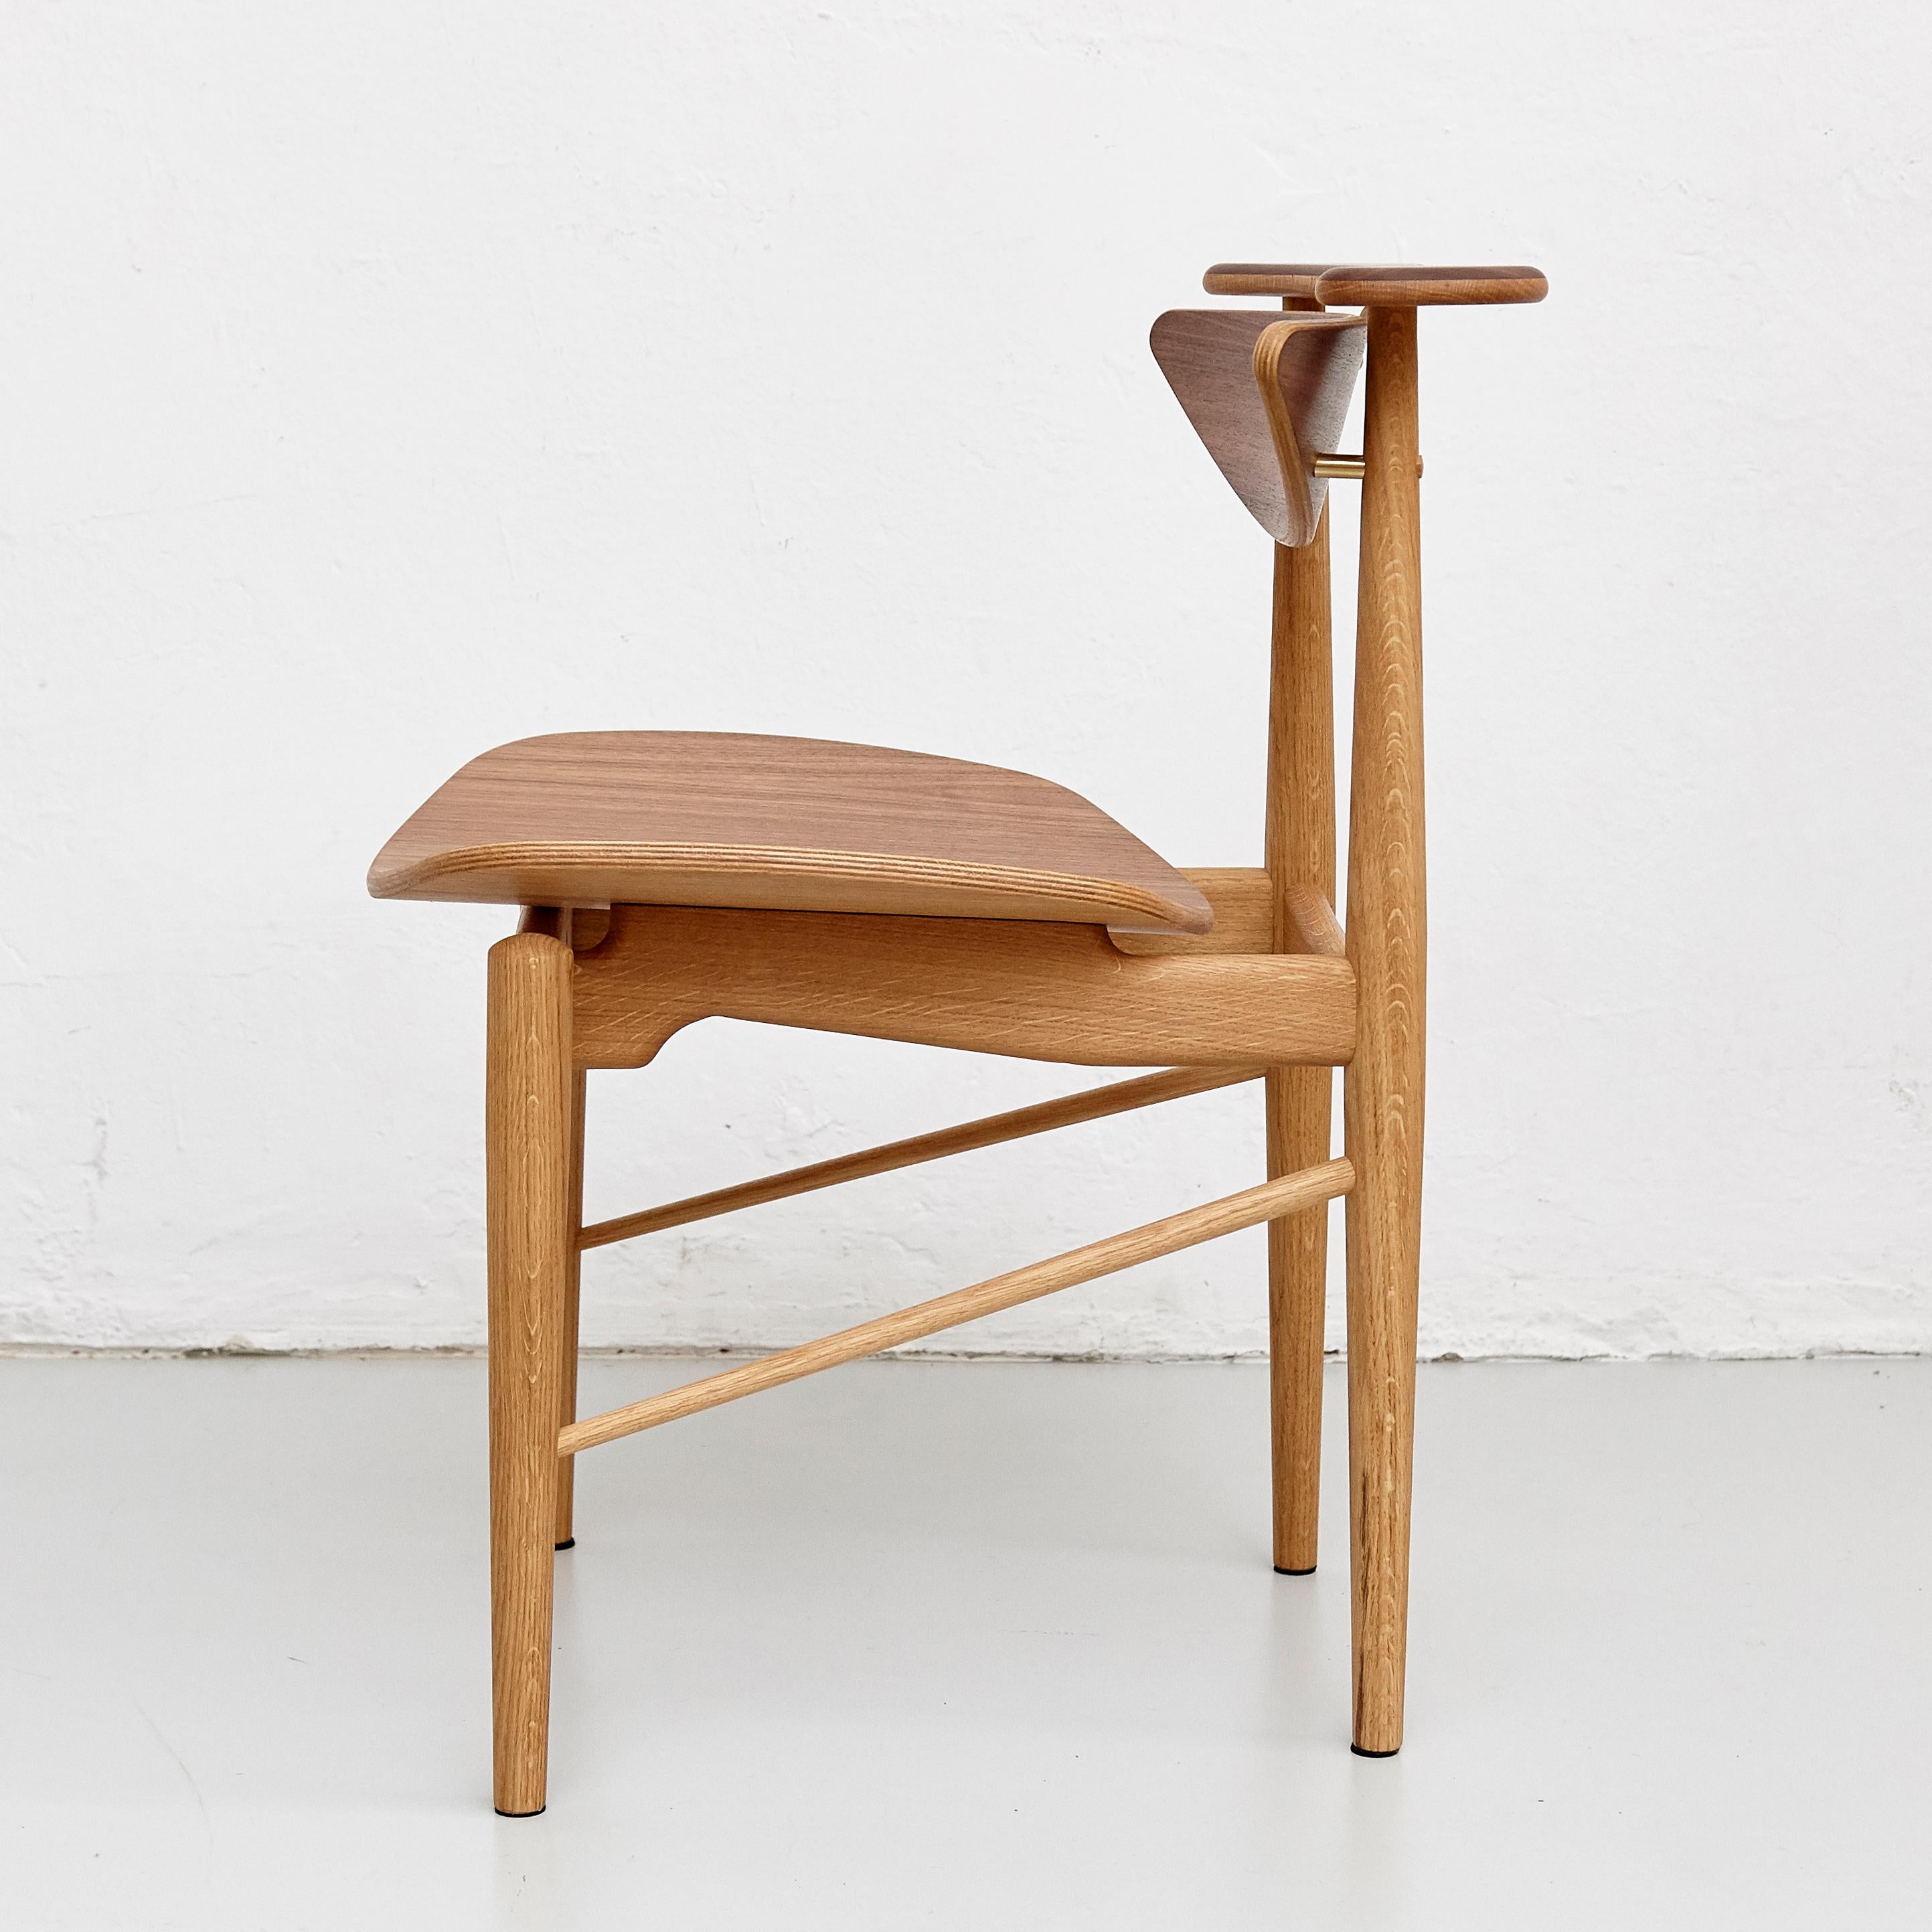 Chaise conçue par Finn Juhls en 1953, relancée en 2015.
Fabriqué par la Maison Finn Juhl au Danemark.

La chaise Reading est l'une des pièces les plus simples mais les plus élégantes de Finn Juhls. La chaise se caractérise par des détails complexes